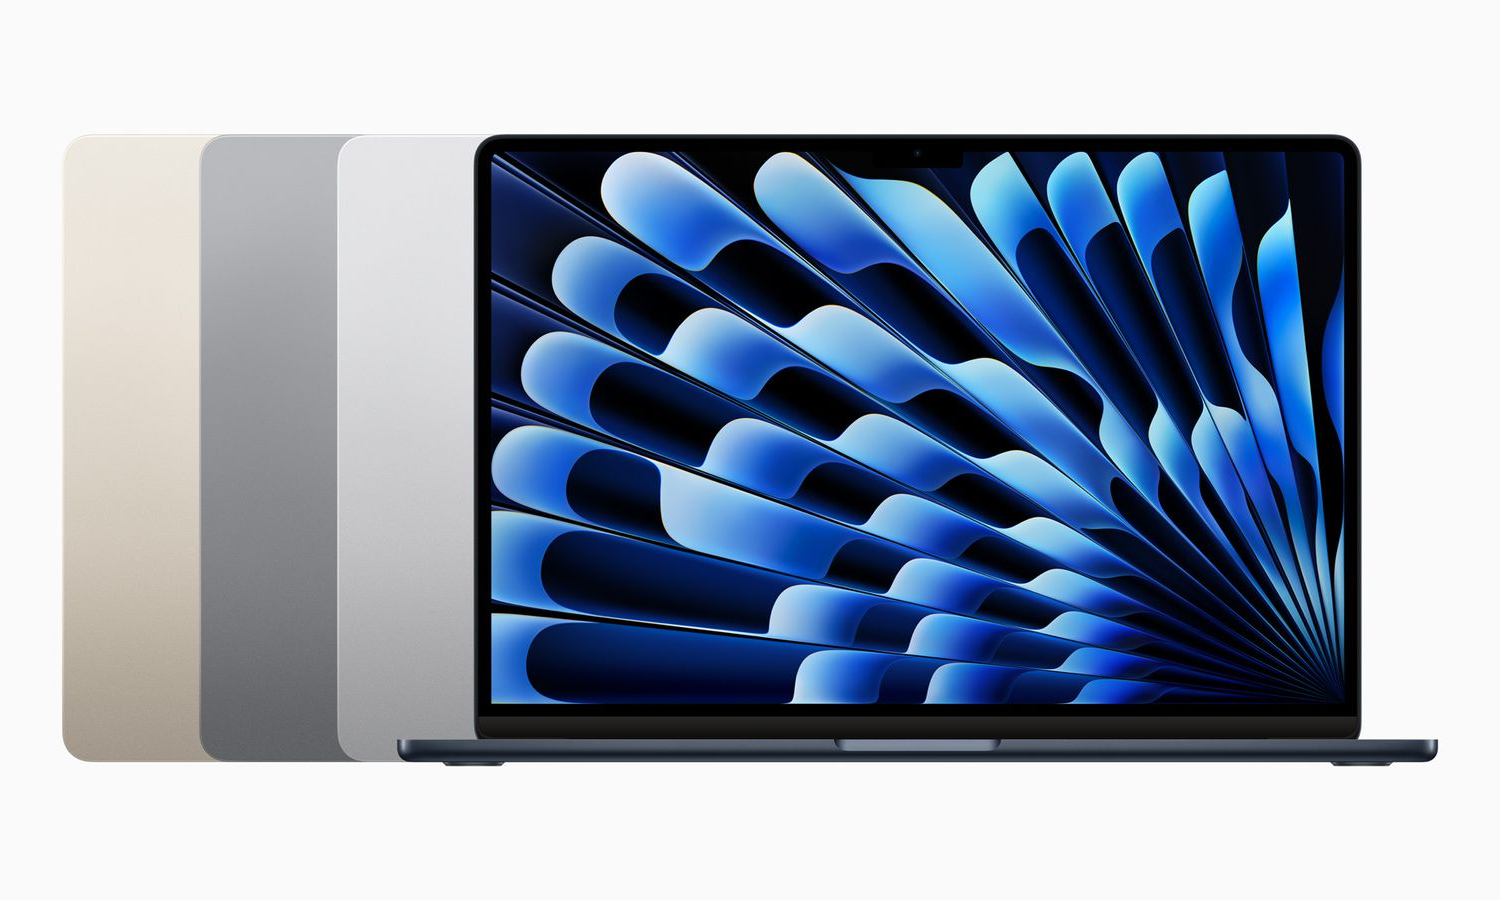 「更实惠」的 MacBook 可能在未来推出